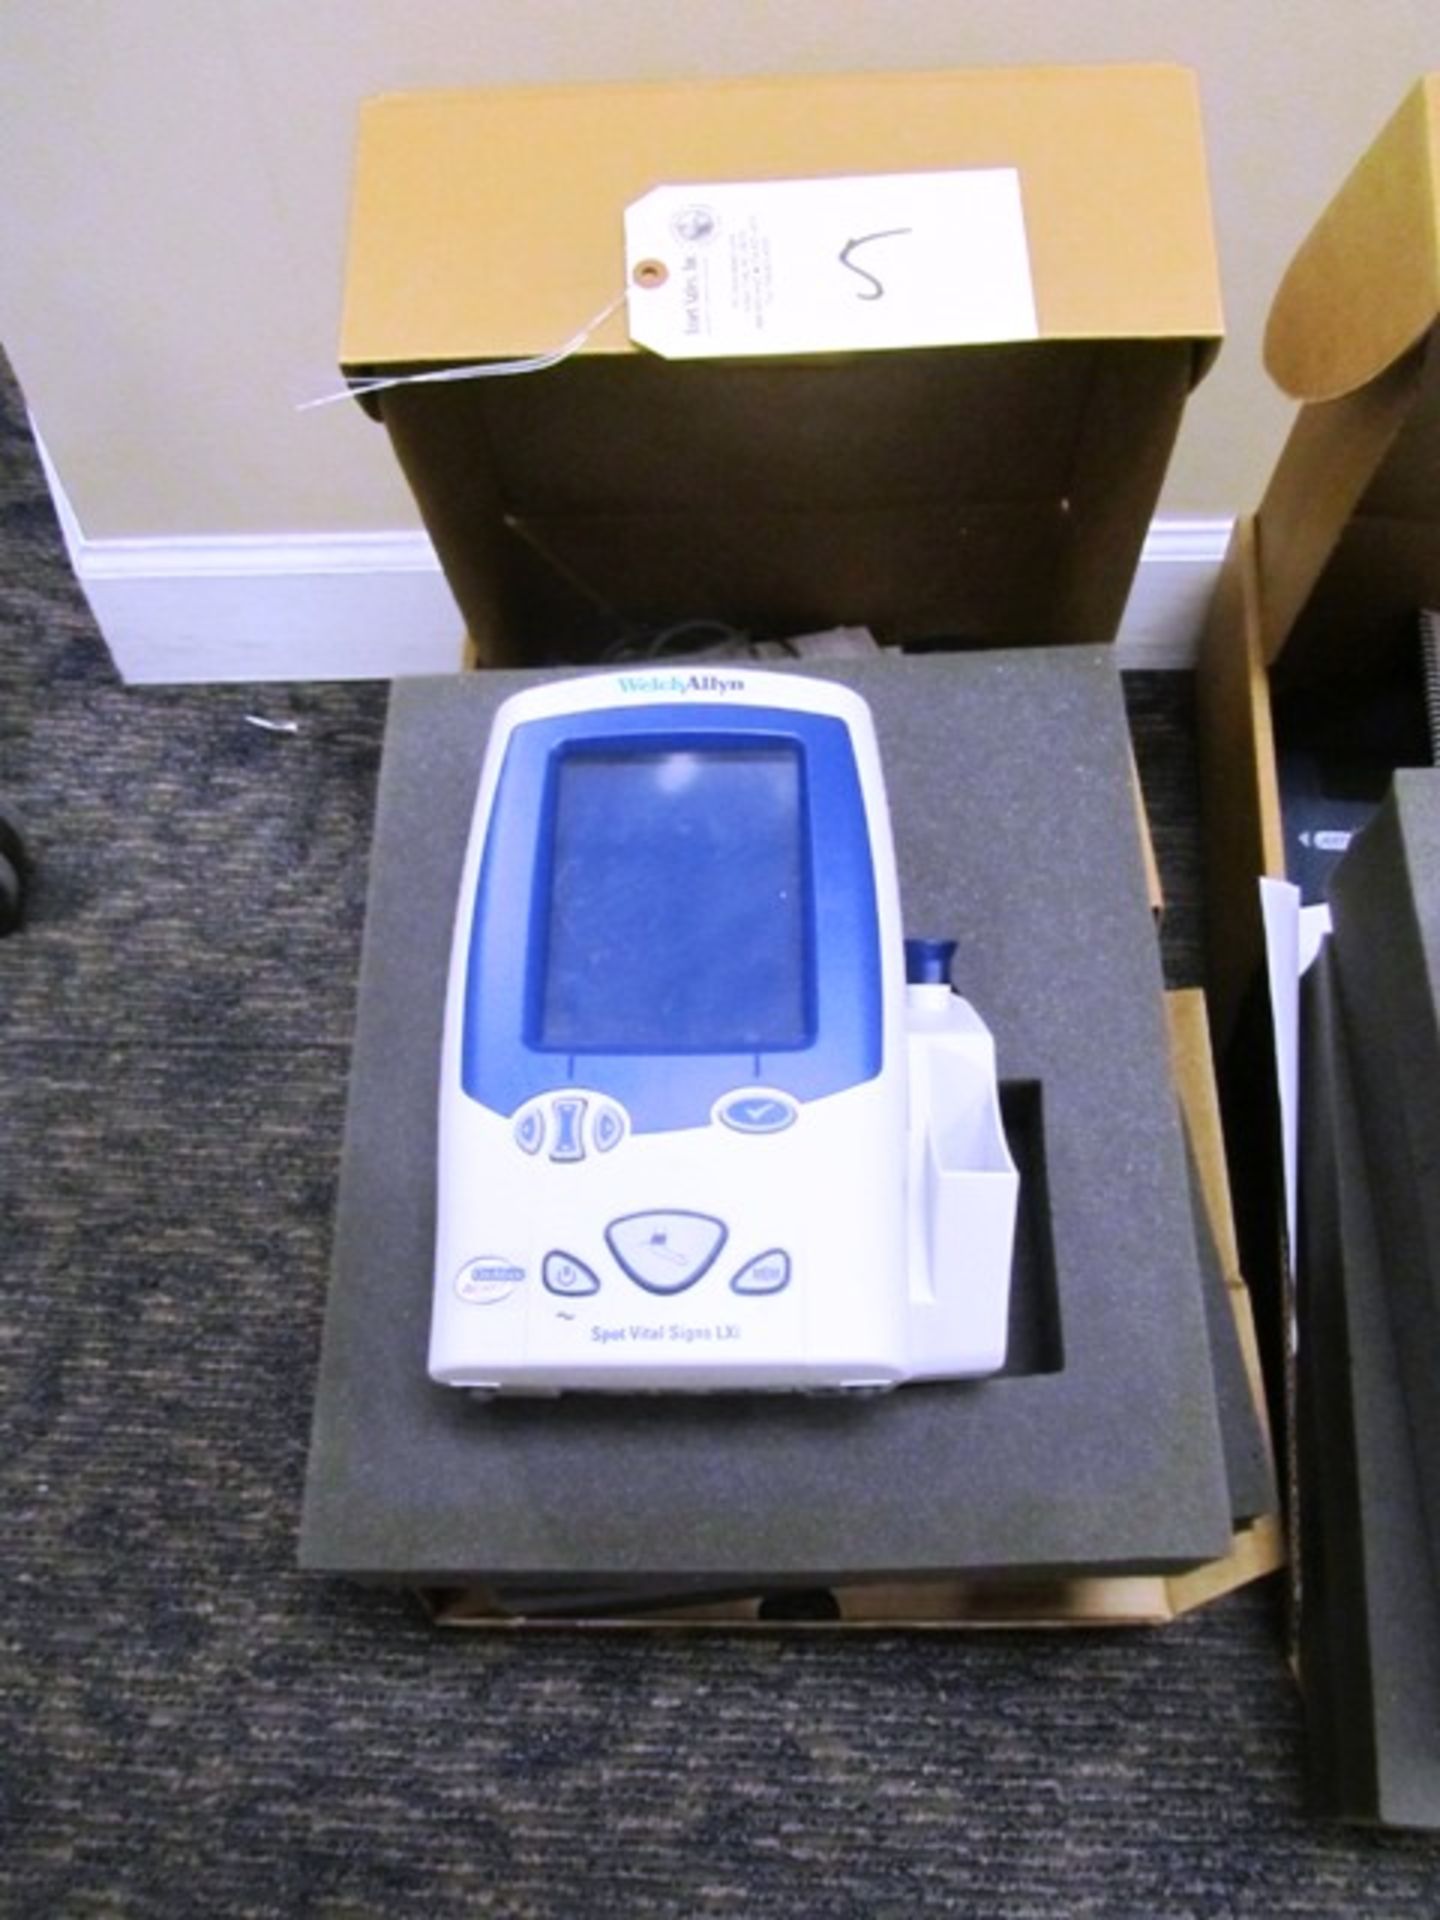 Welch Allyn Spot Vital Signs LXI Digital Blood Pressure Machine (new) *located Oak Lawn, IL